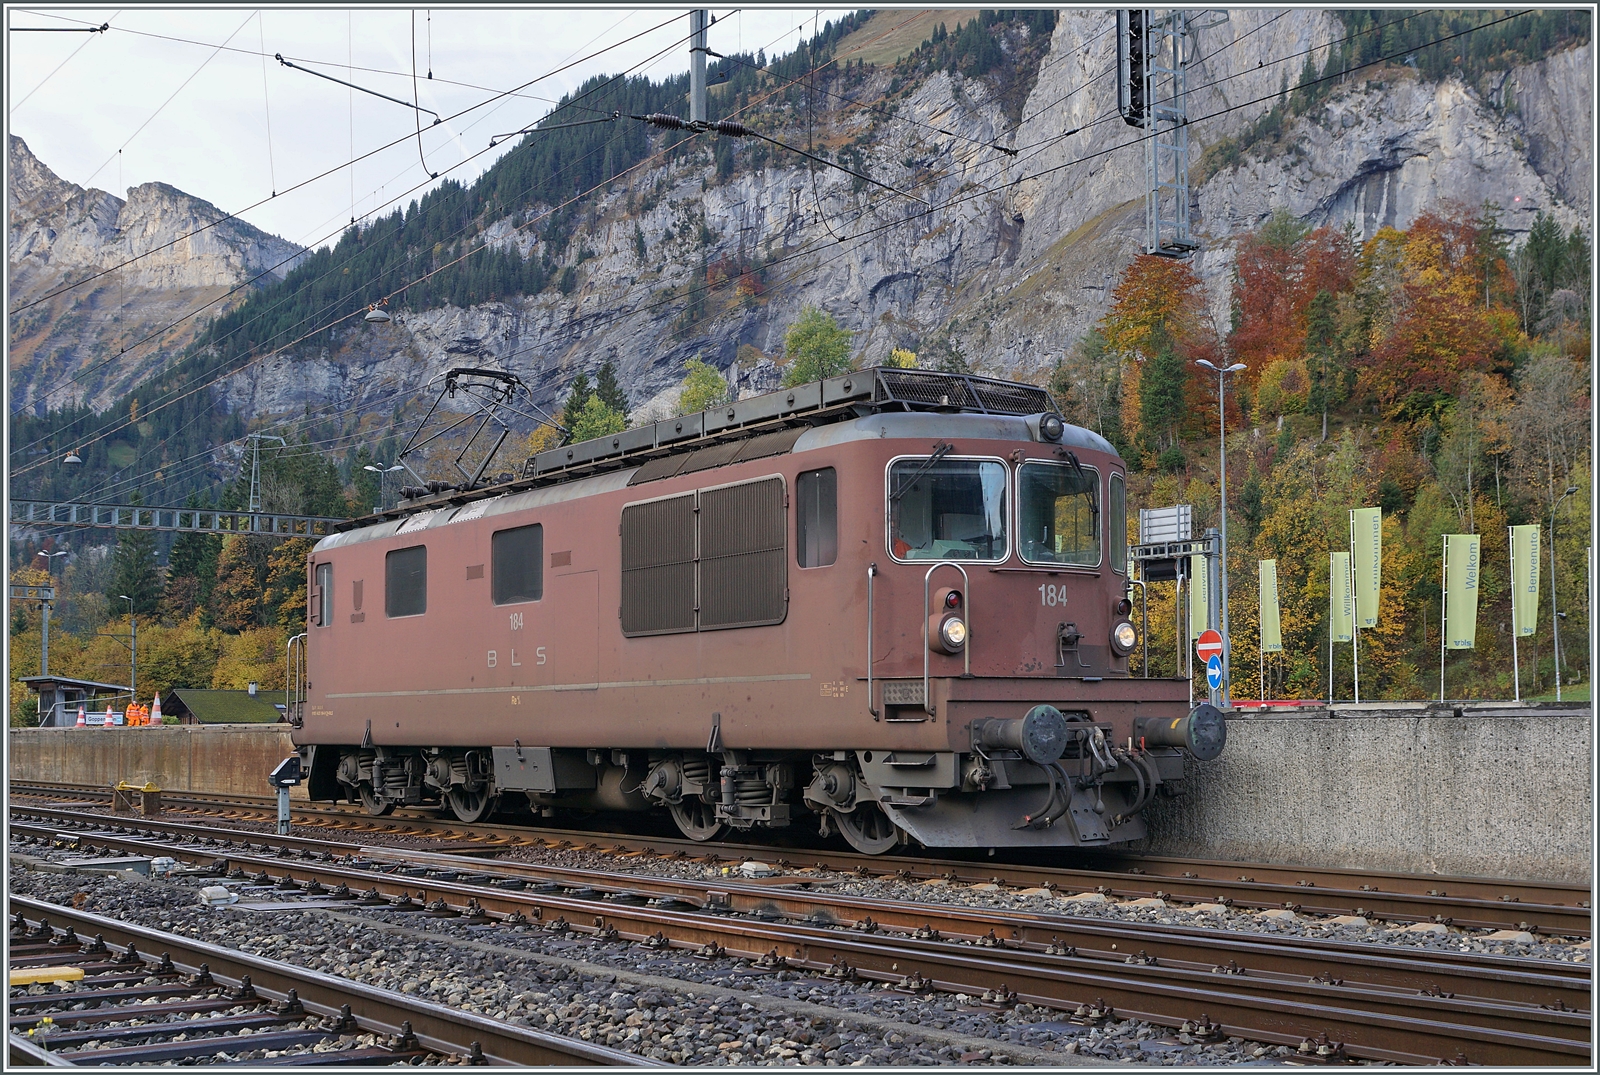 Die BLS Re 4/4 184 hat viel von ihrem alten Glanz verloren, doch ihrem Scherenstromabnehmer hat die Lok weiterhin ihren Charm behalten. Die Lok rangiert in Kandersteg. 

11. Oktober 2022